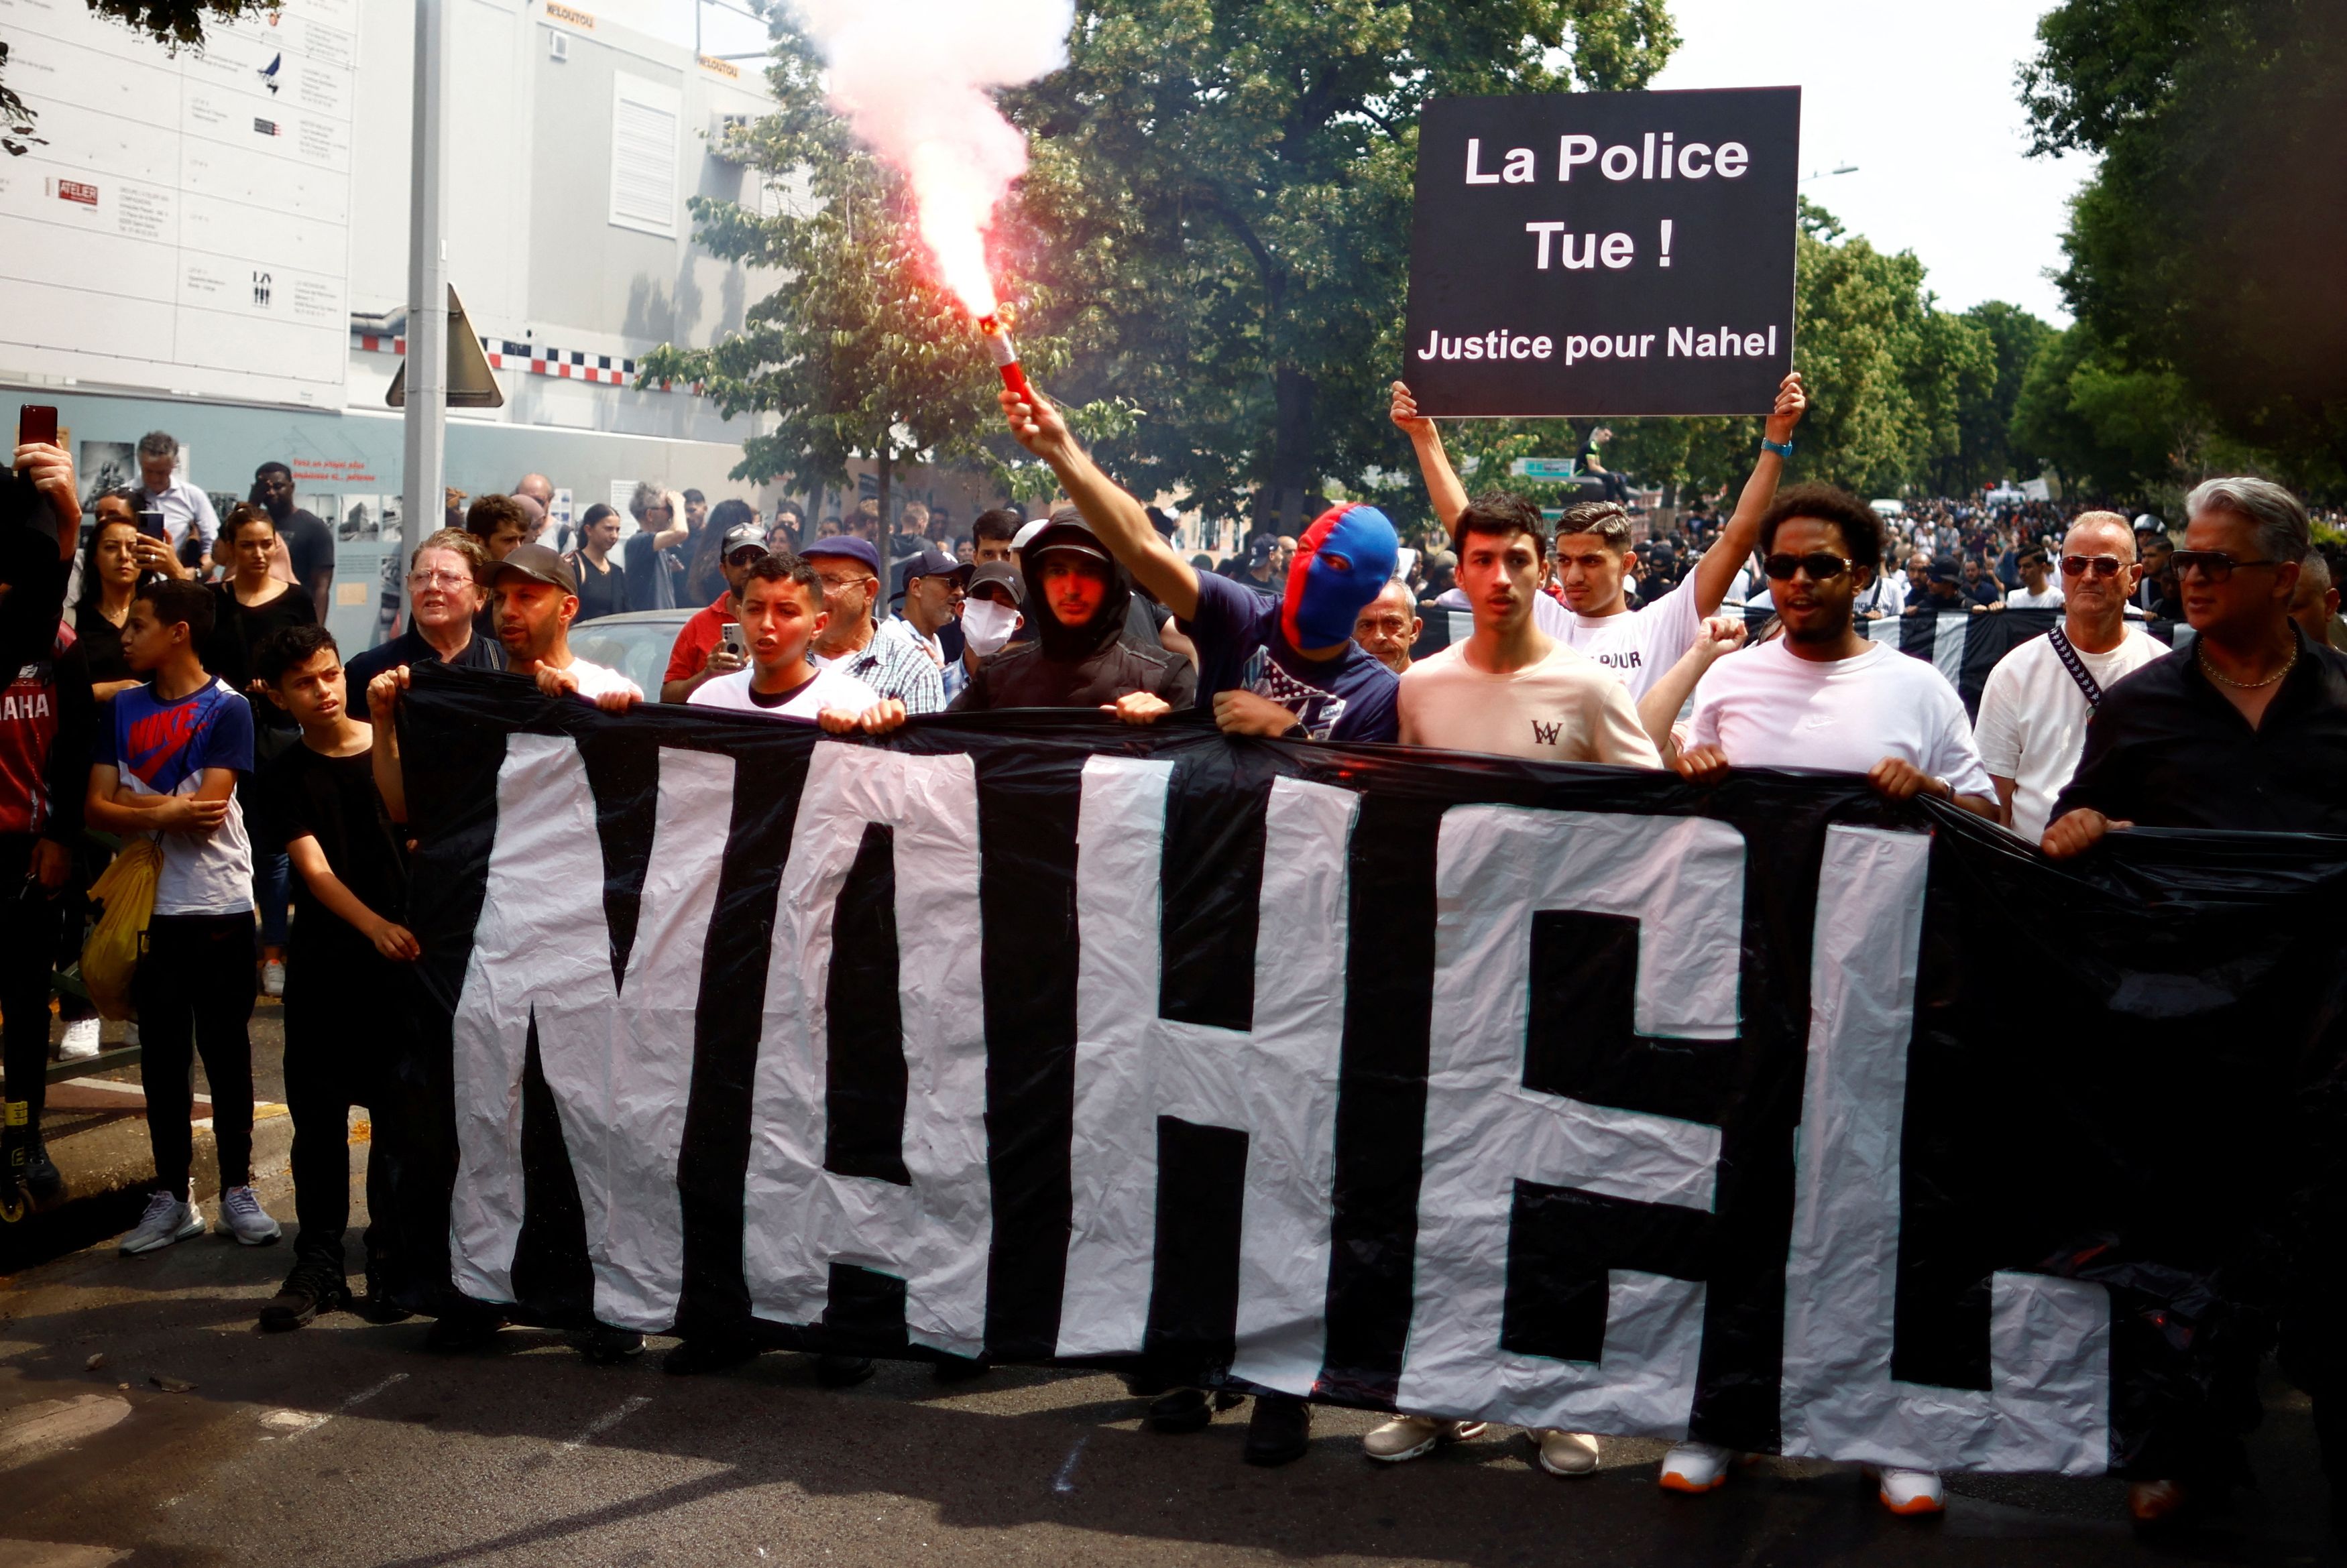 Δολοφονία 17χρονου στη Γαλλία: Οι «Ναέλ» εξεγείρονται γιατί δεν βλέπουν ελπίδα - «Μας θεωρούν λιγότερο ανθρώπους»